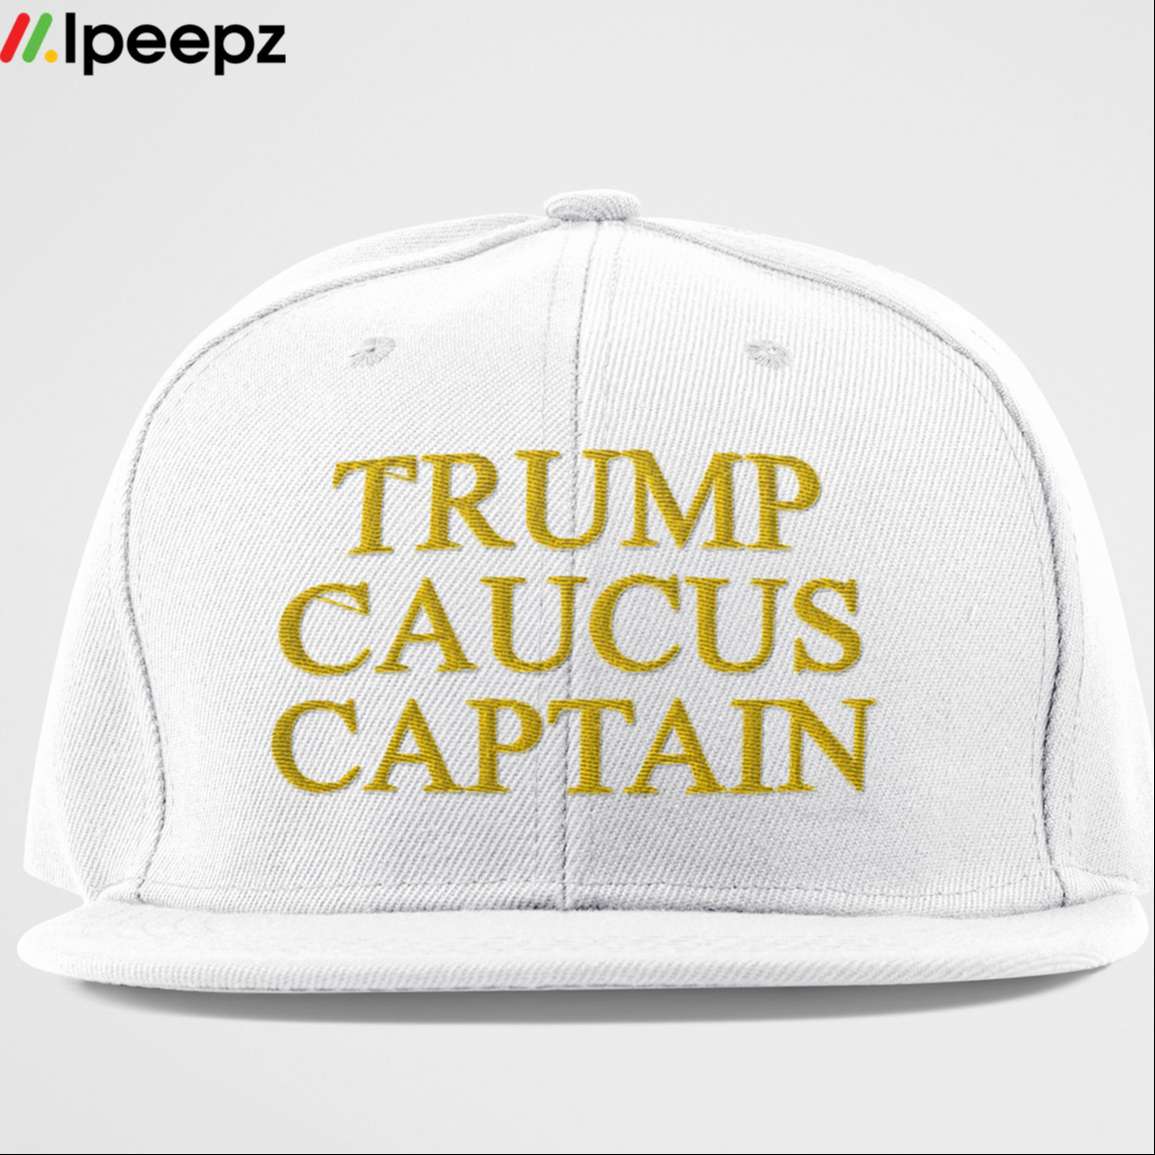 Donald Trump Caucus Captain Cap